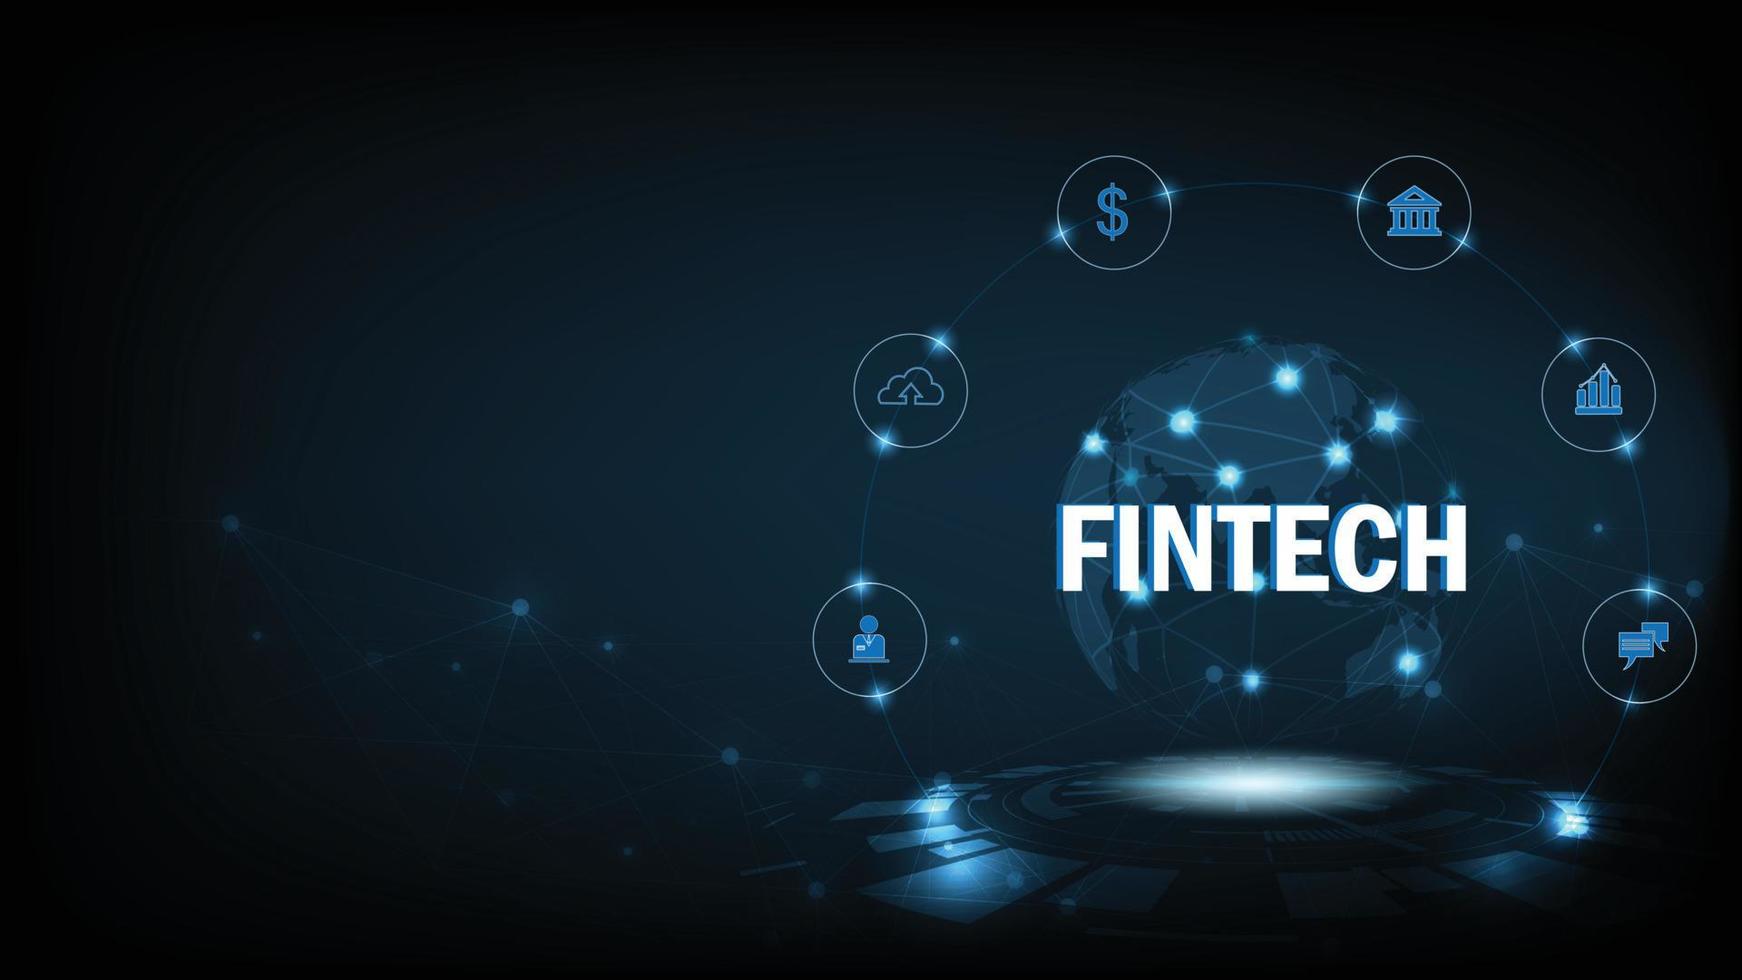 tecnología financiera y clase mundial de negocios. El icono fintech y las cosas en el fondo de tecnología azul oscuro representan la conexión de tecnología financiera, banca y clase mundial de negocios. vector